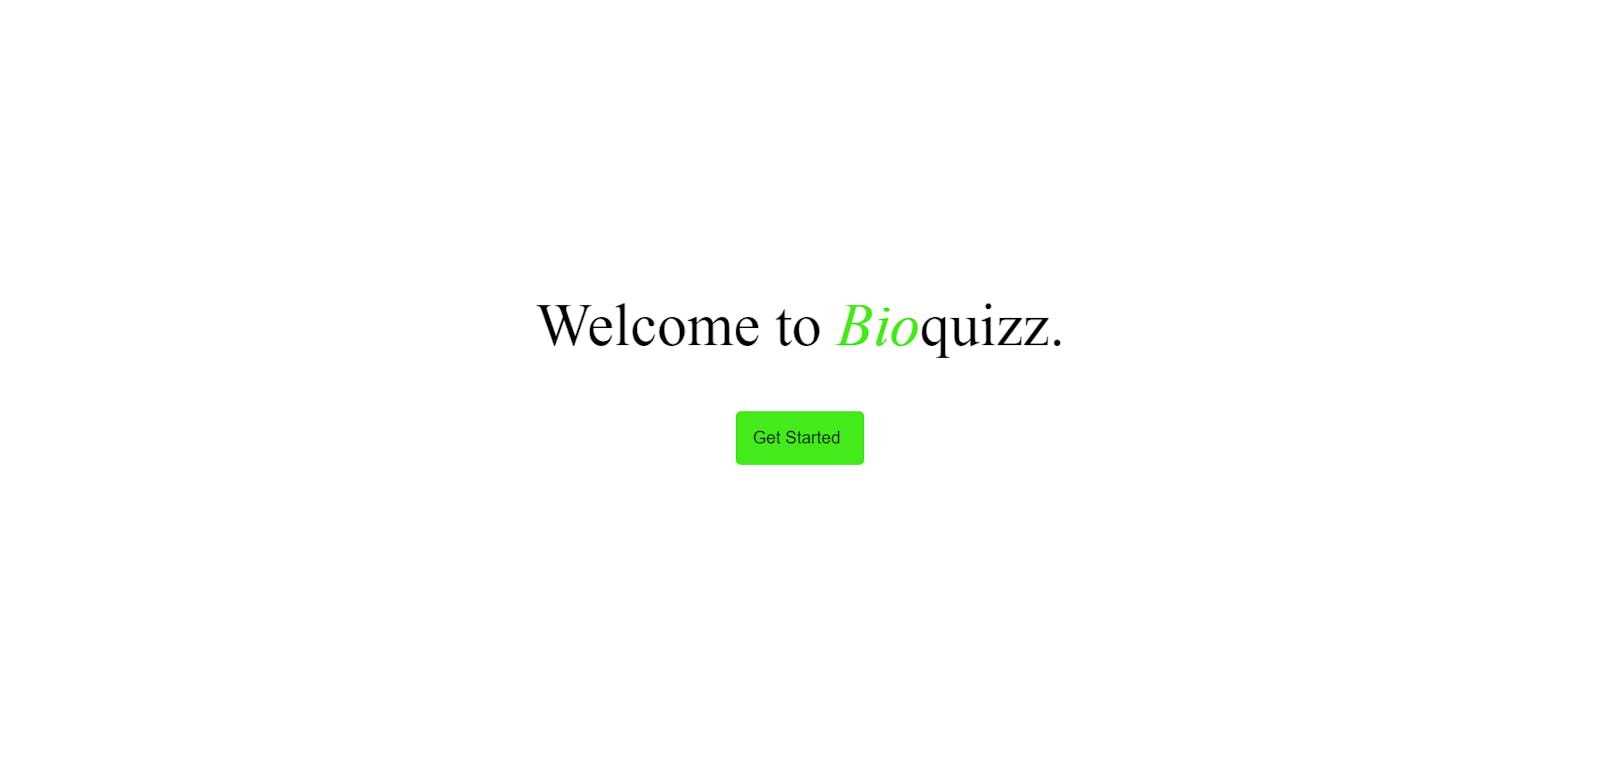 Bioquizz- my latest website